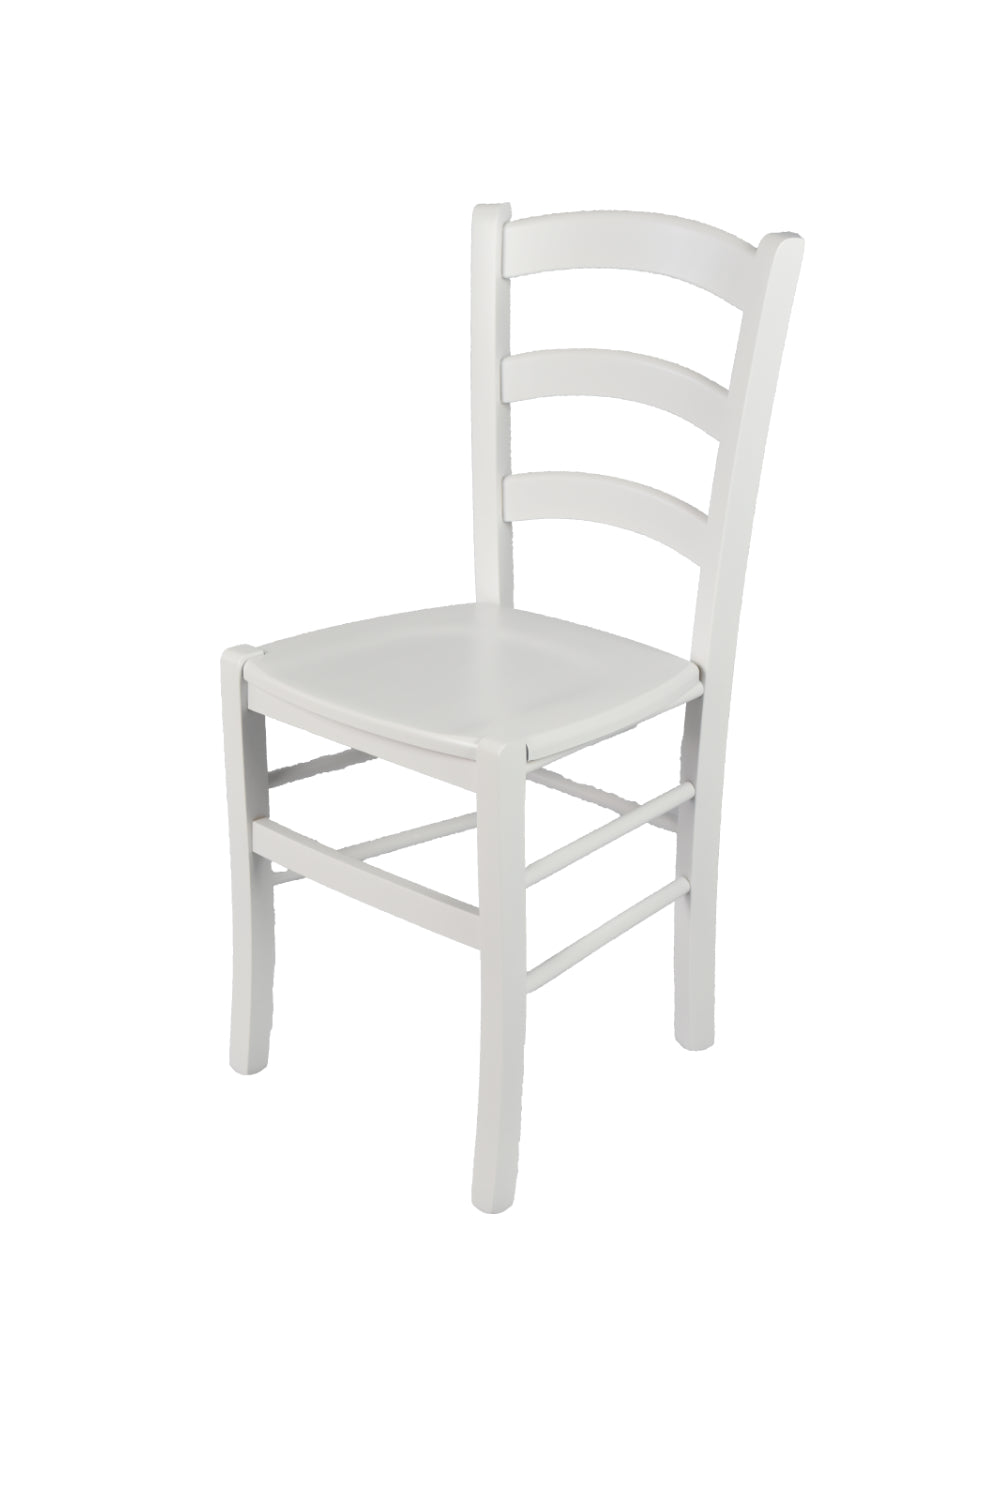 Laccato bianco/Set 1 sedia